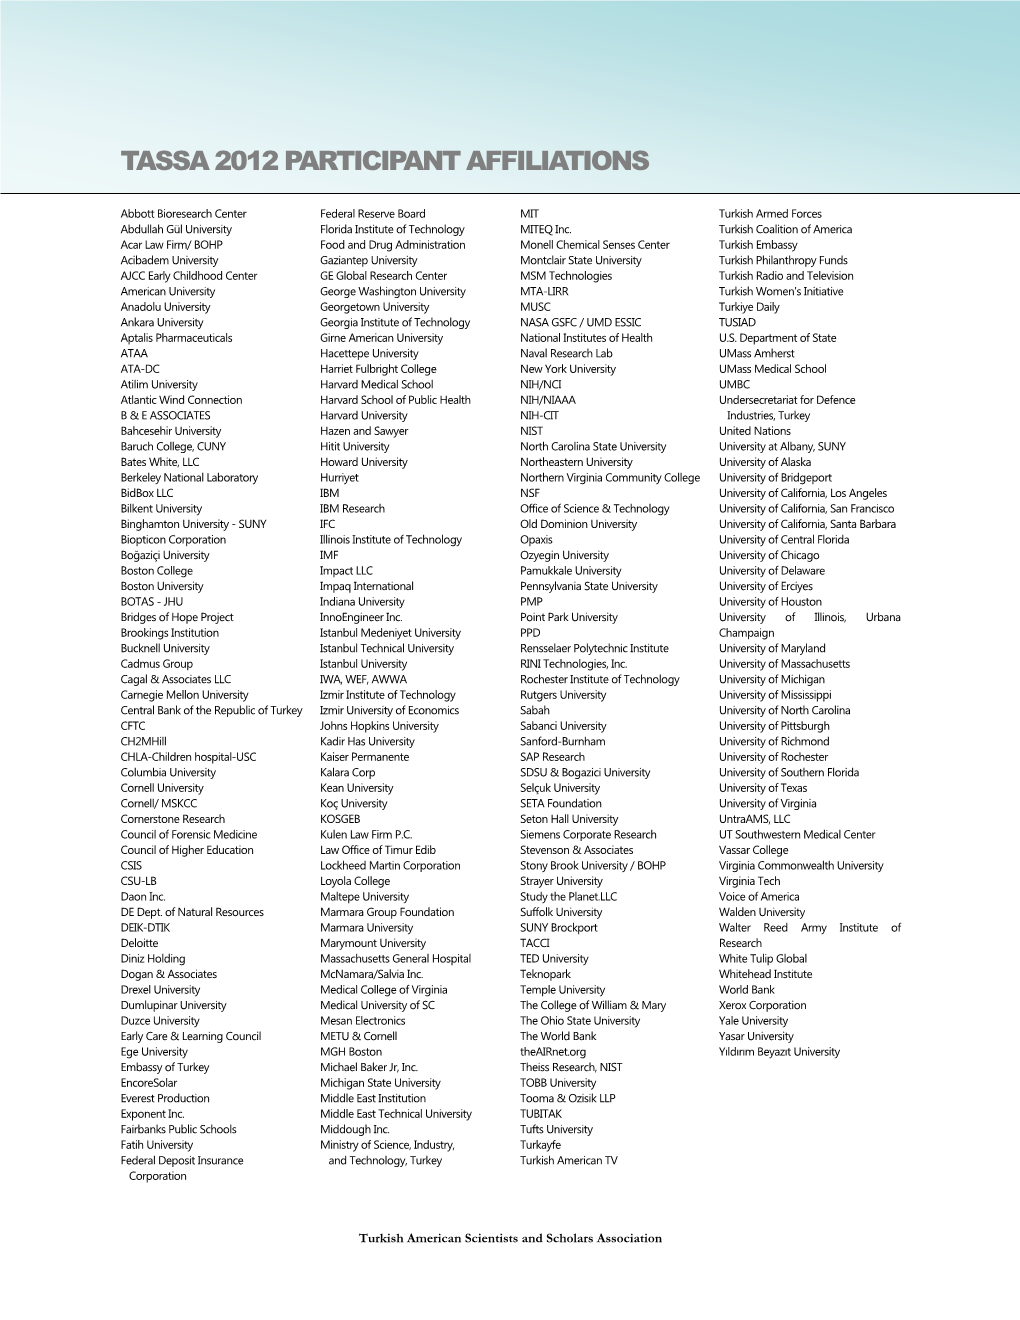 Tassa 2012 Participant Affiliations